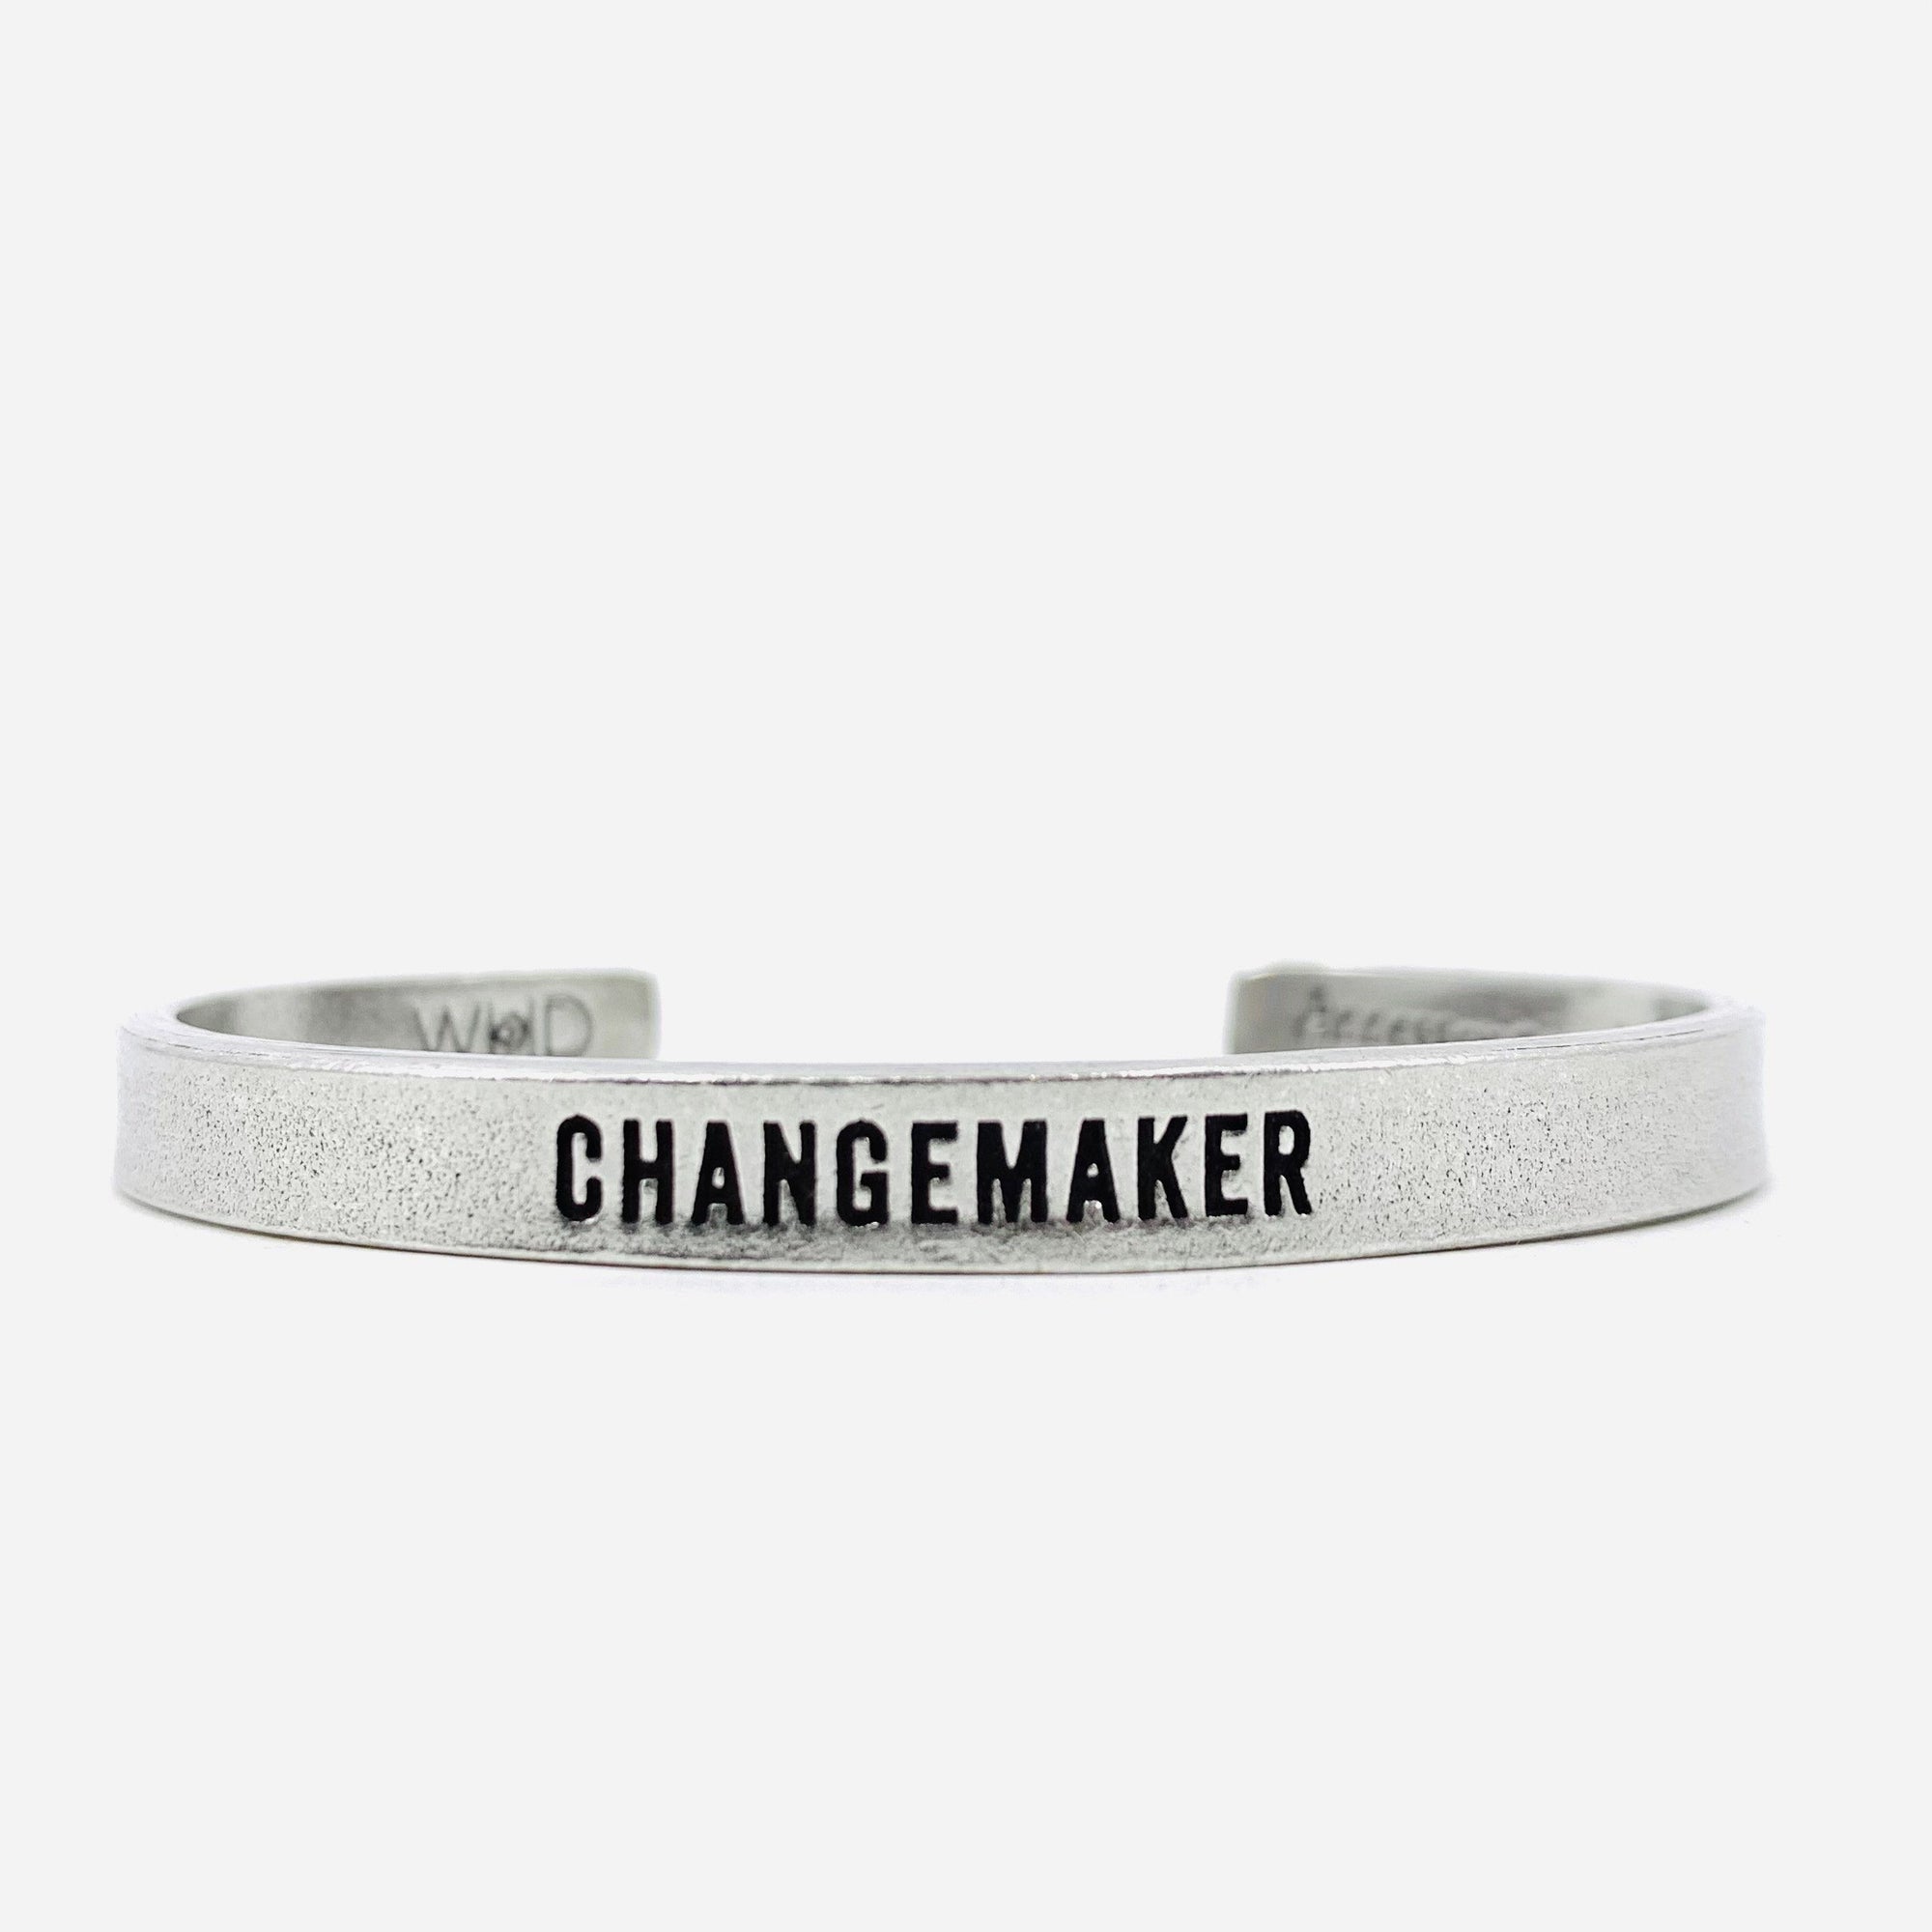 Pewter Cuff Bracelet, Changemaker Jewelry Whitney Howard Designs 